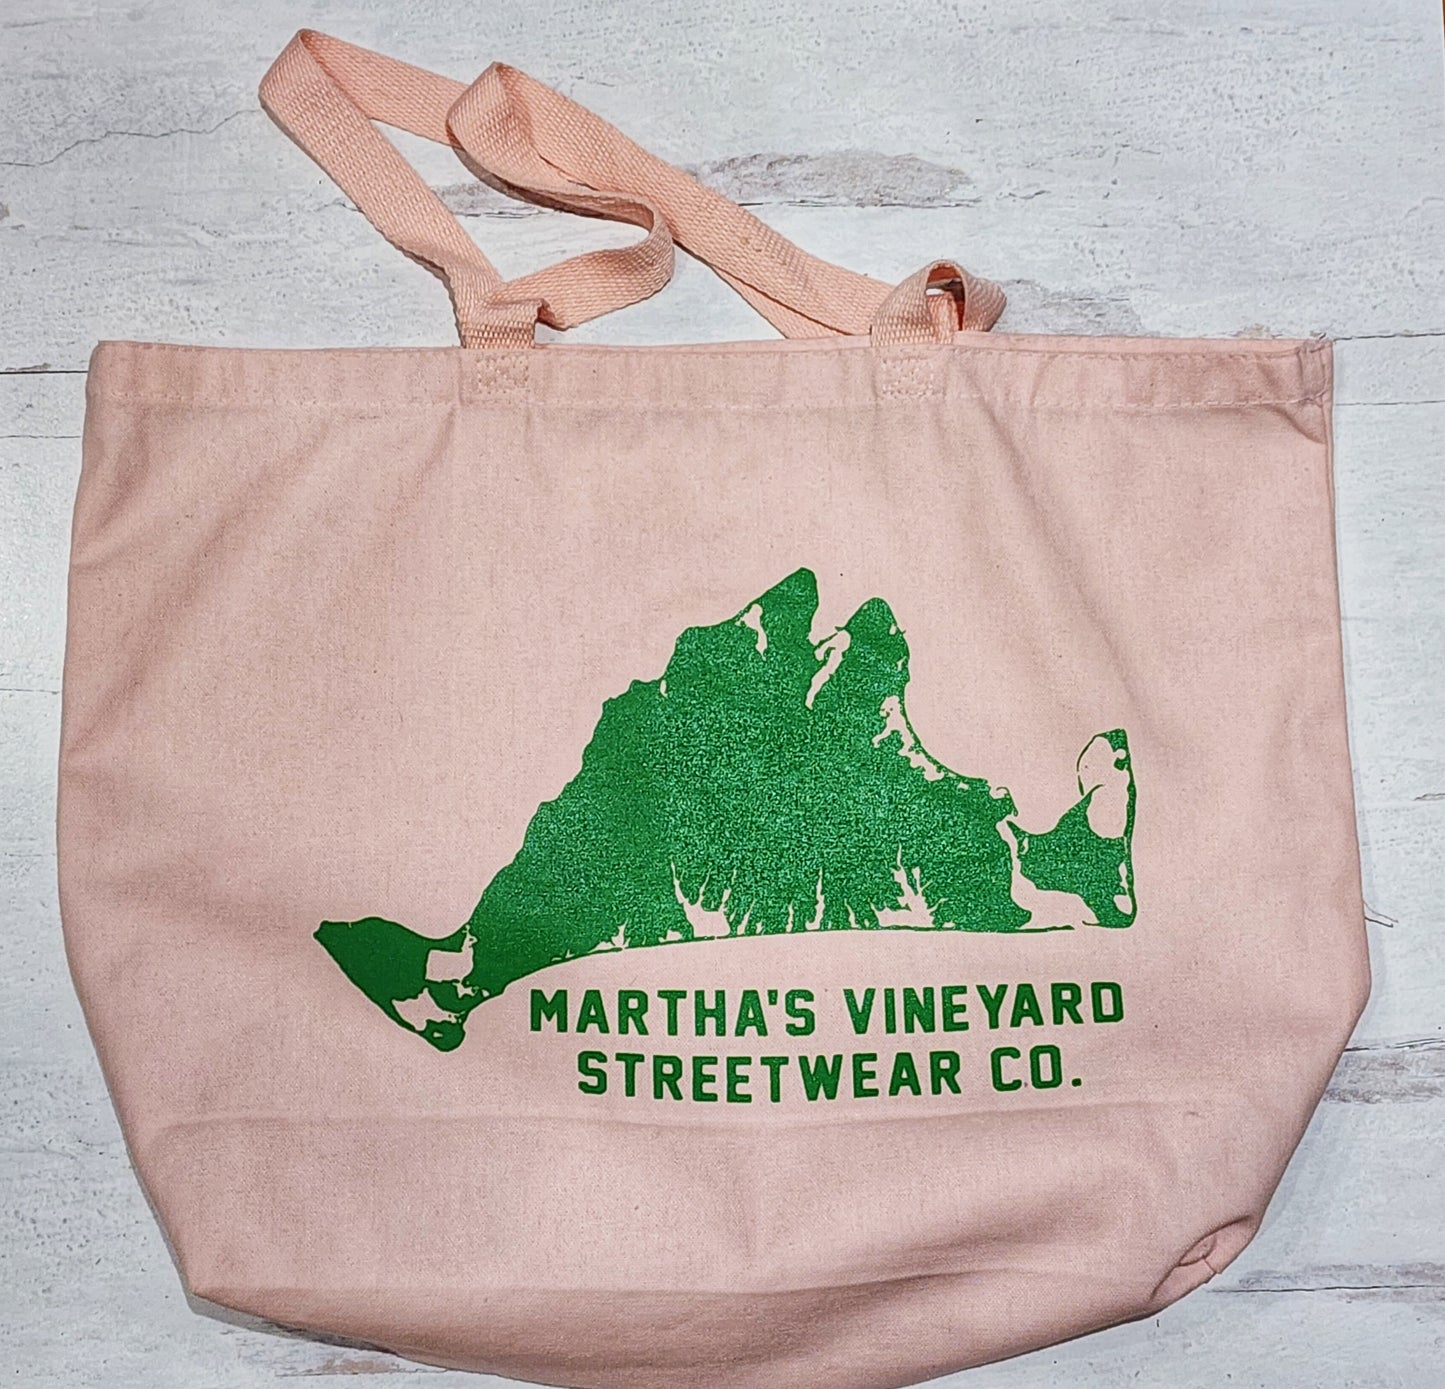 MV Streetwear Tote (Preppy Pink & Green)